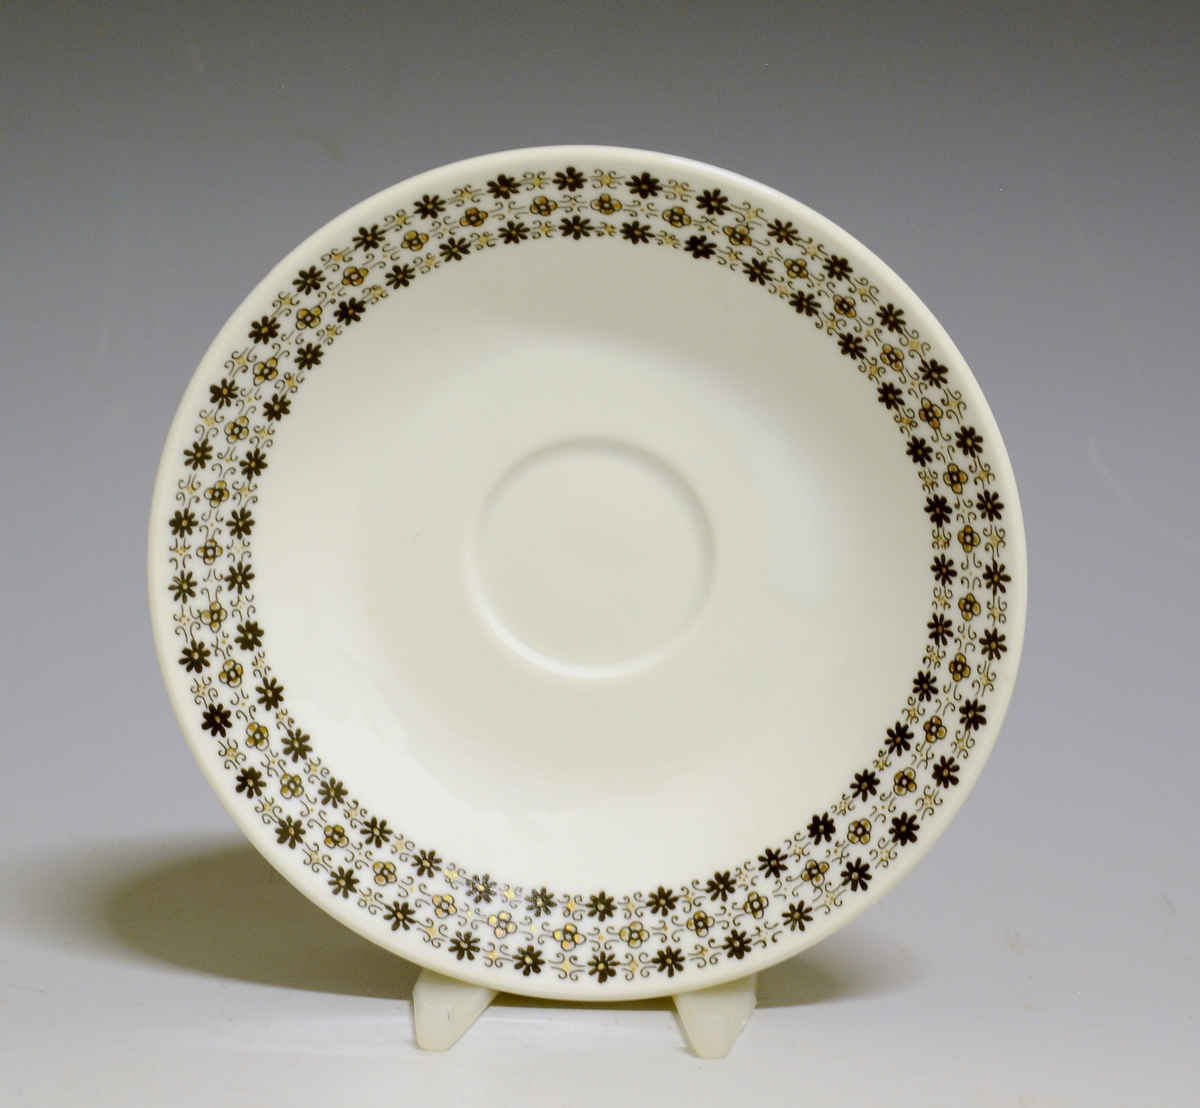 Kaffeskål av porselen med hvit glasur og bord med småblomstret trykkdekor i sort og gull langs kanten.
Modell: Petita (eller variant av)
